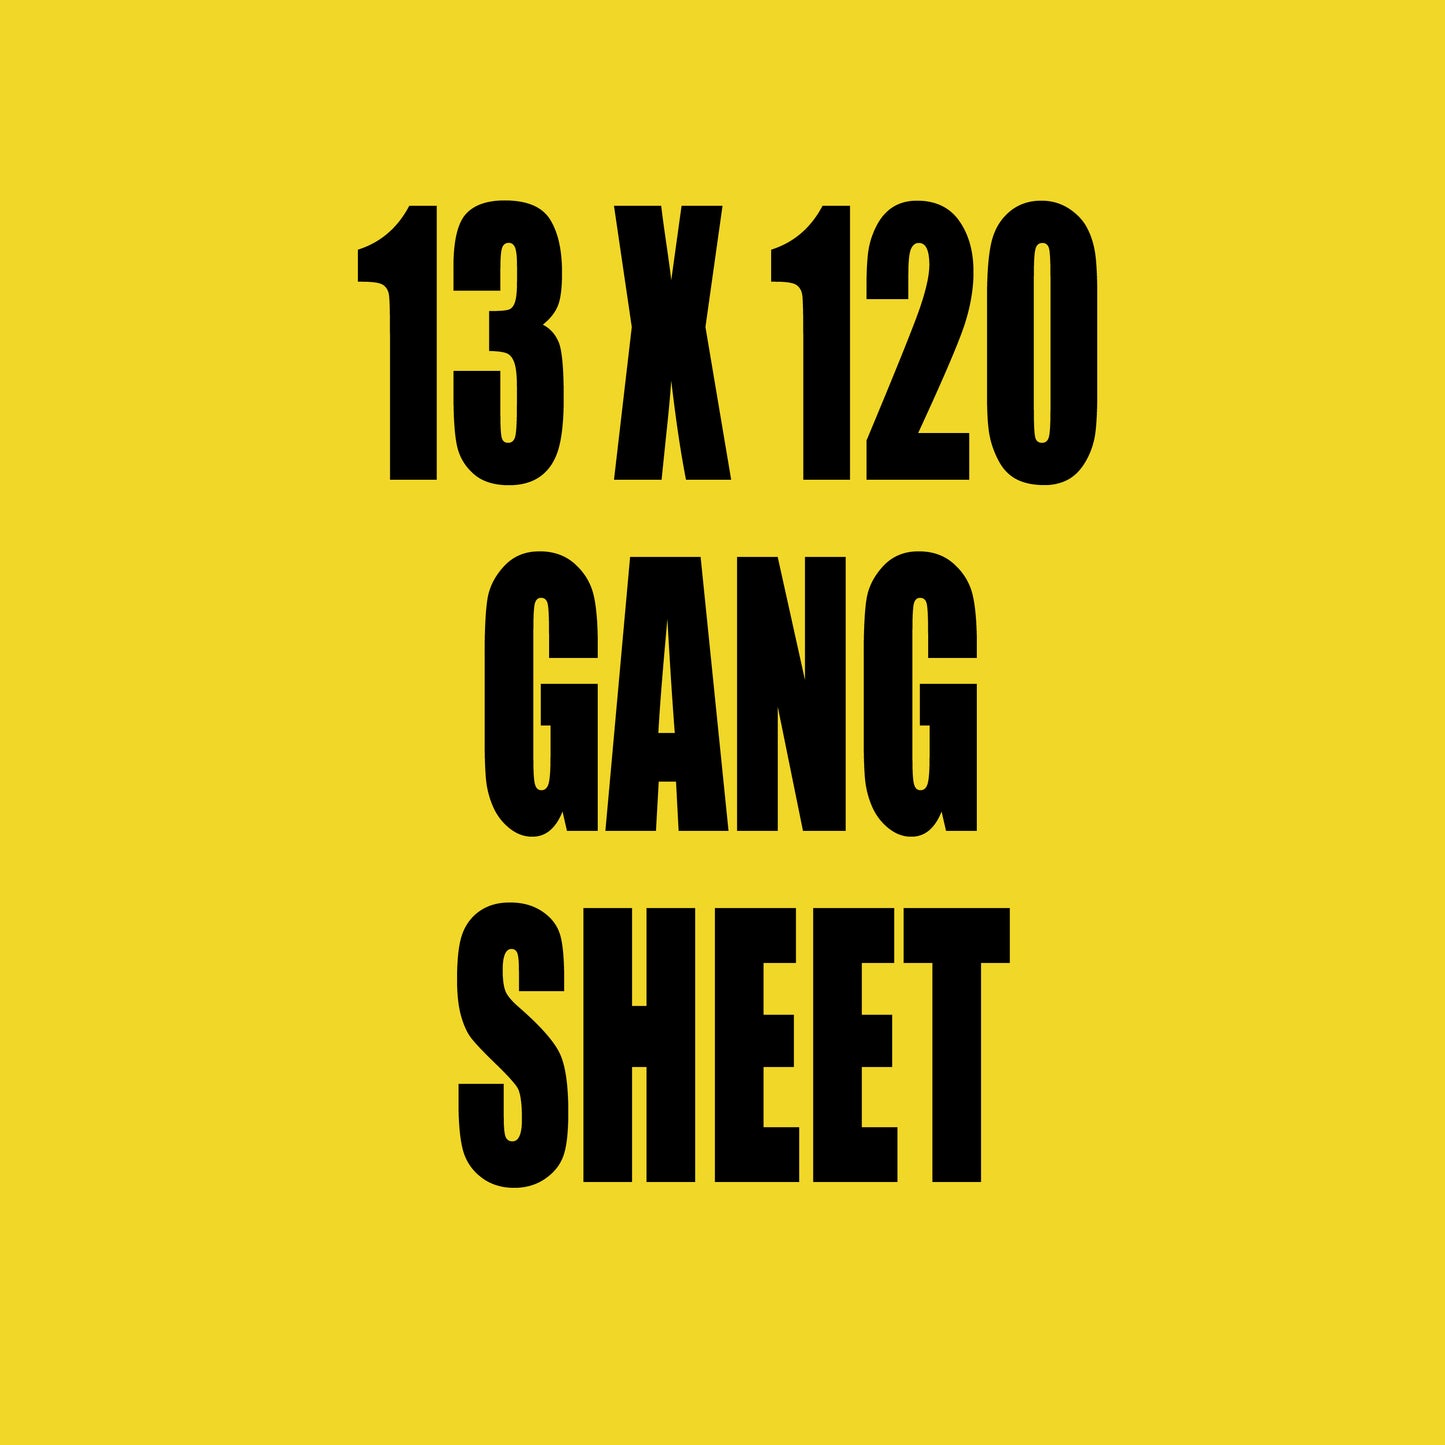 13x120 Gang Sheet